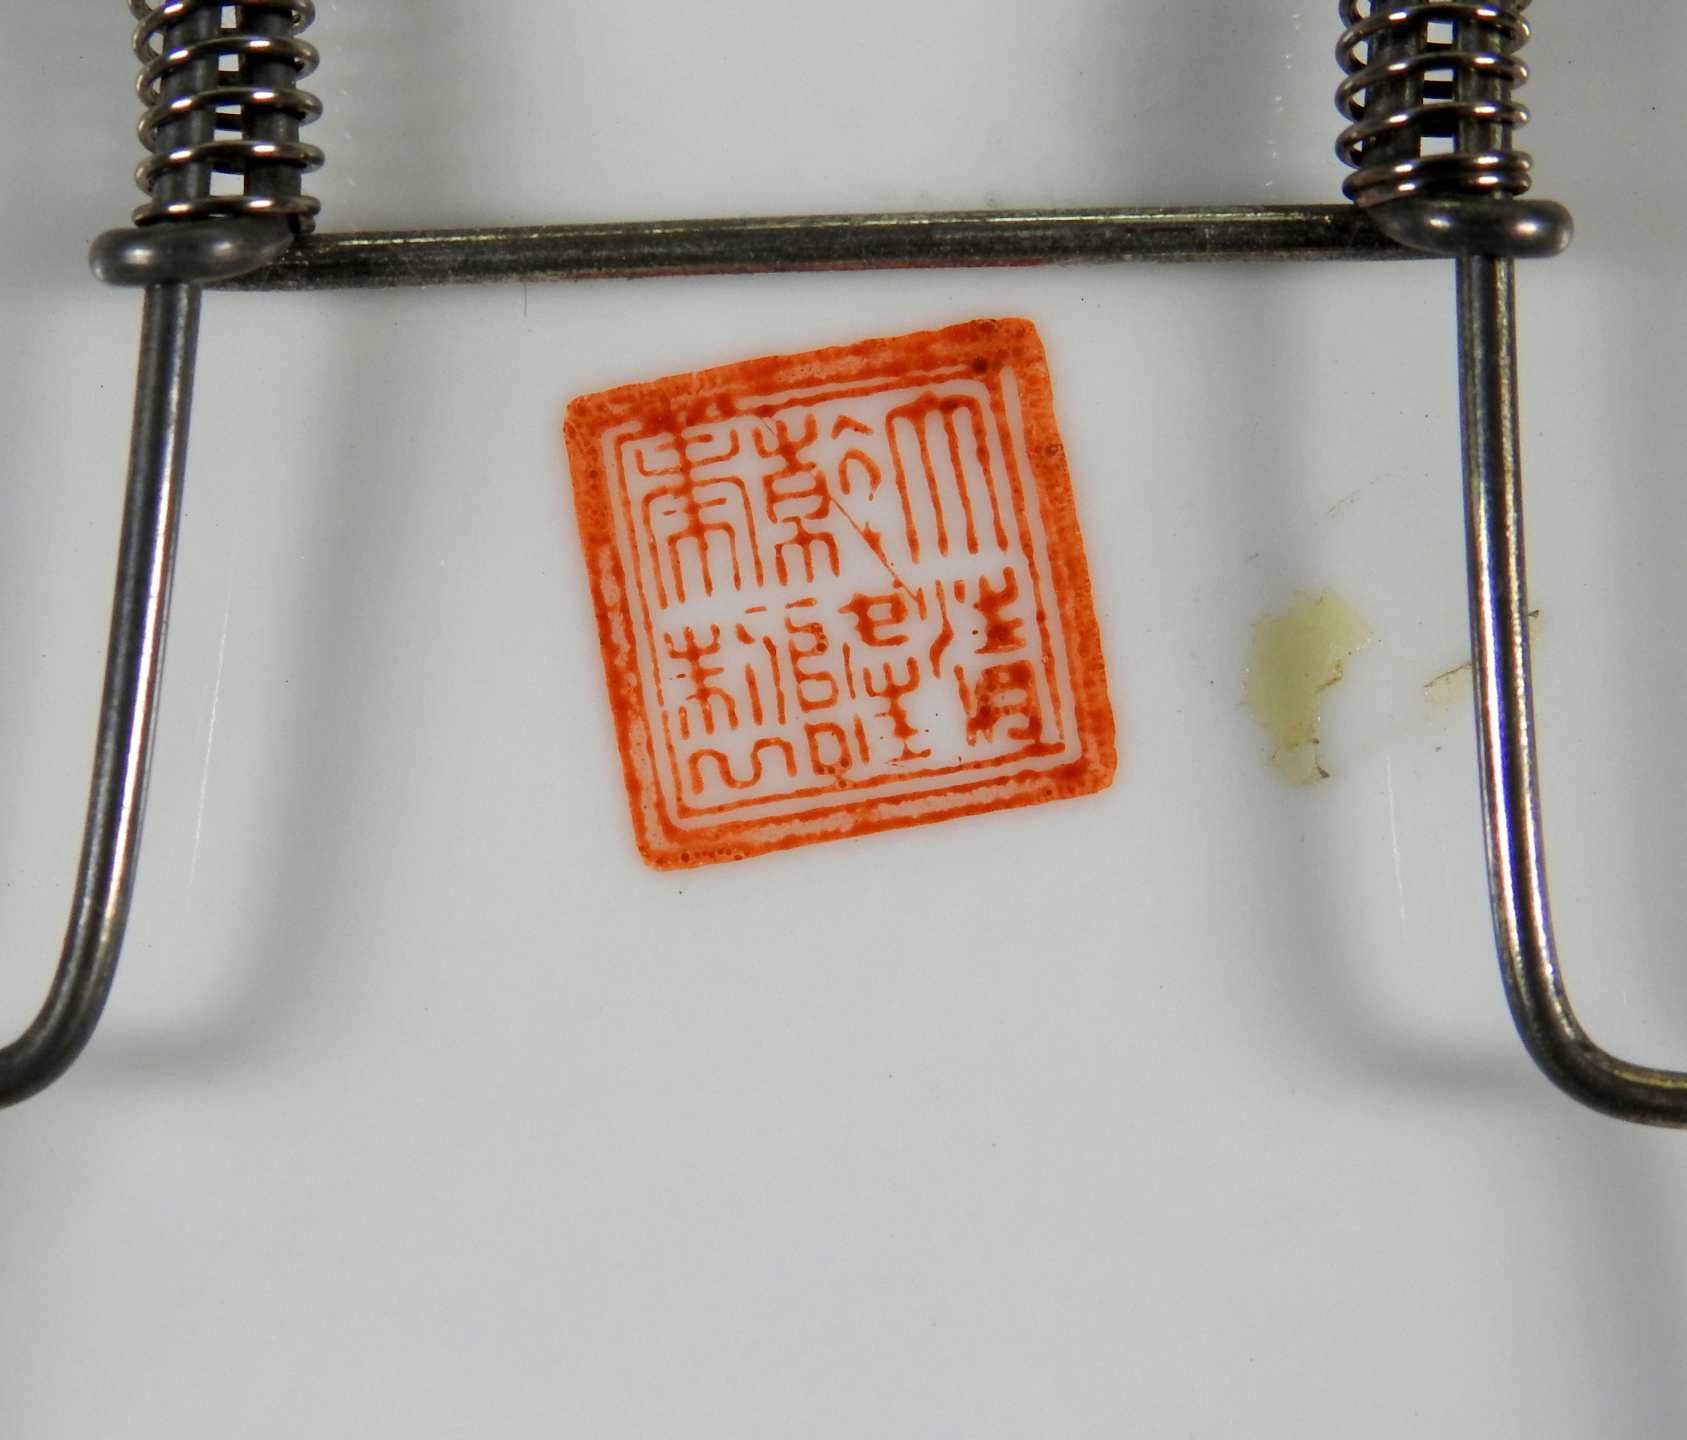 Chinesischer Schauteller Porzellan, polychrom und goldstaffiert. Schauteller im Spiege - Bild 3 aus 4